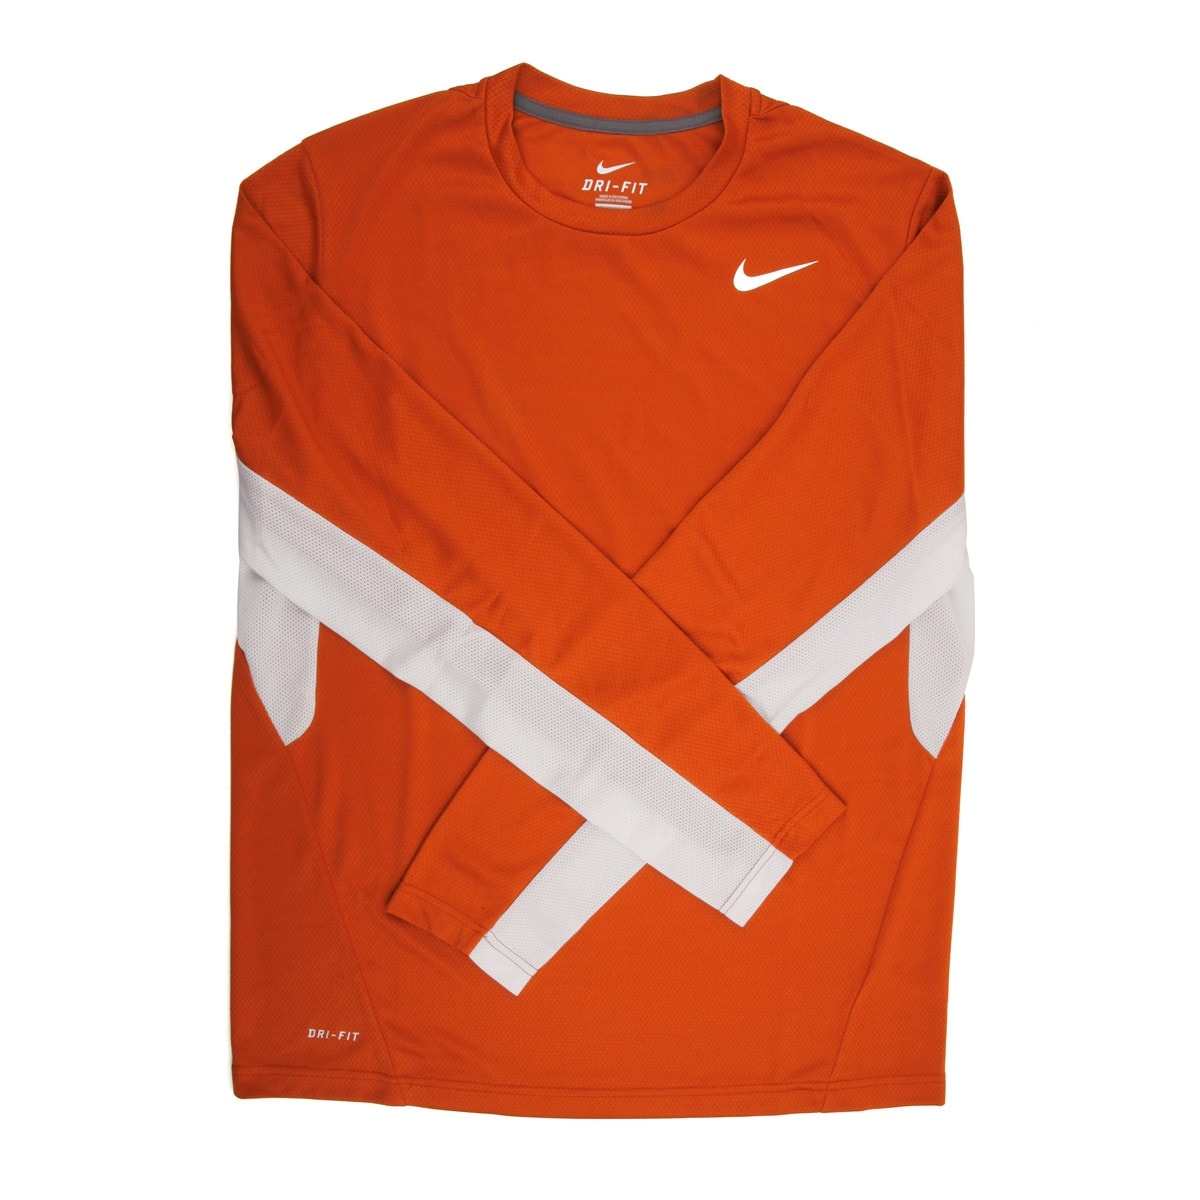 orange nike shirt long sleeve